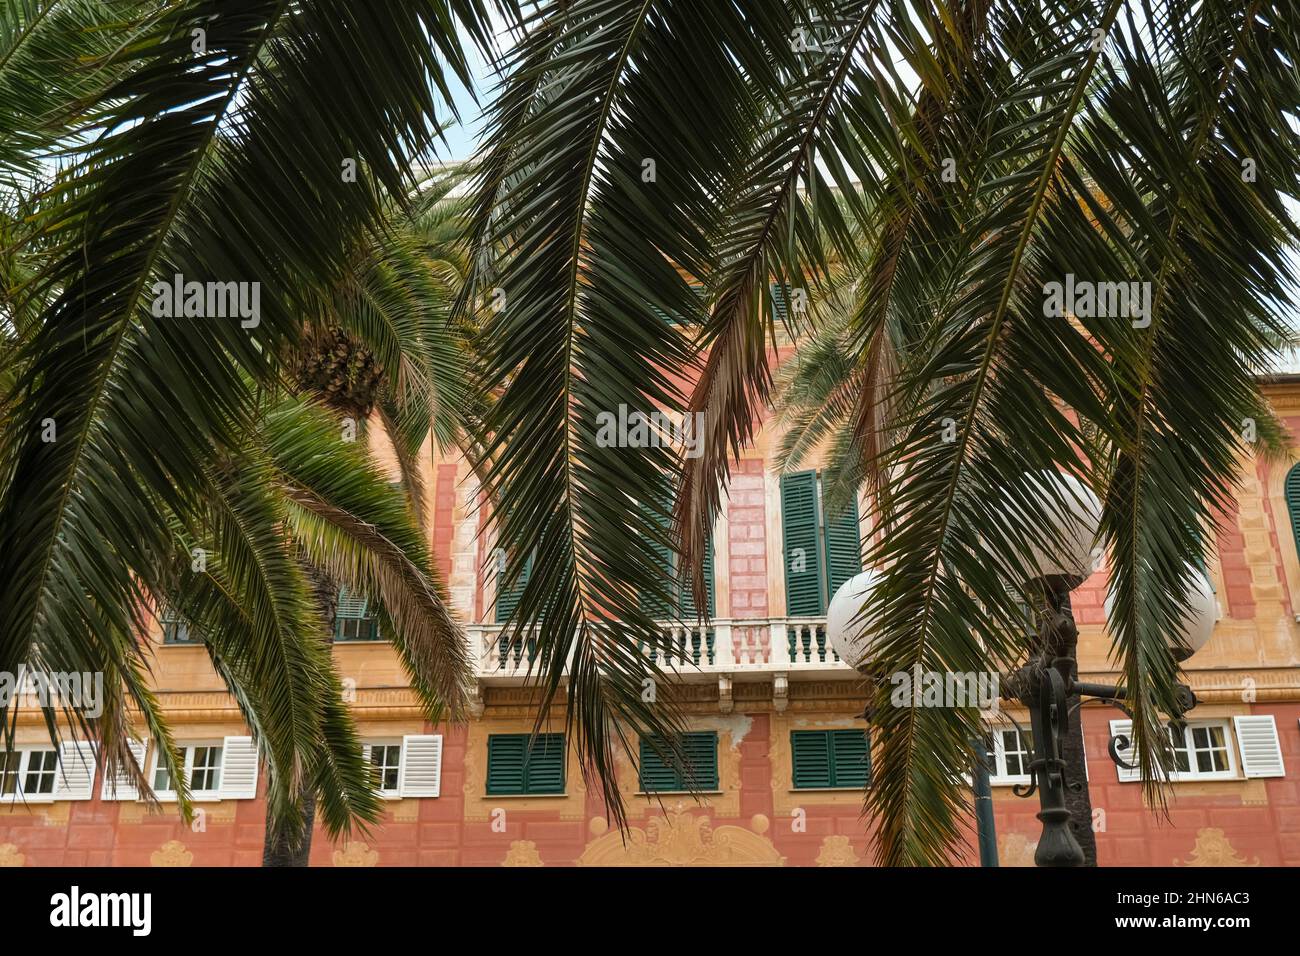 Palmenblätter und Äste gegenüber dem orangefarbenen und roten Hotelgebäude mit grünen Fensterläden am Himmel. Sommerurlaub Stimmung, Hintergrund. Mittelmeer Stockfoto